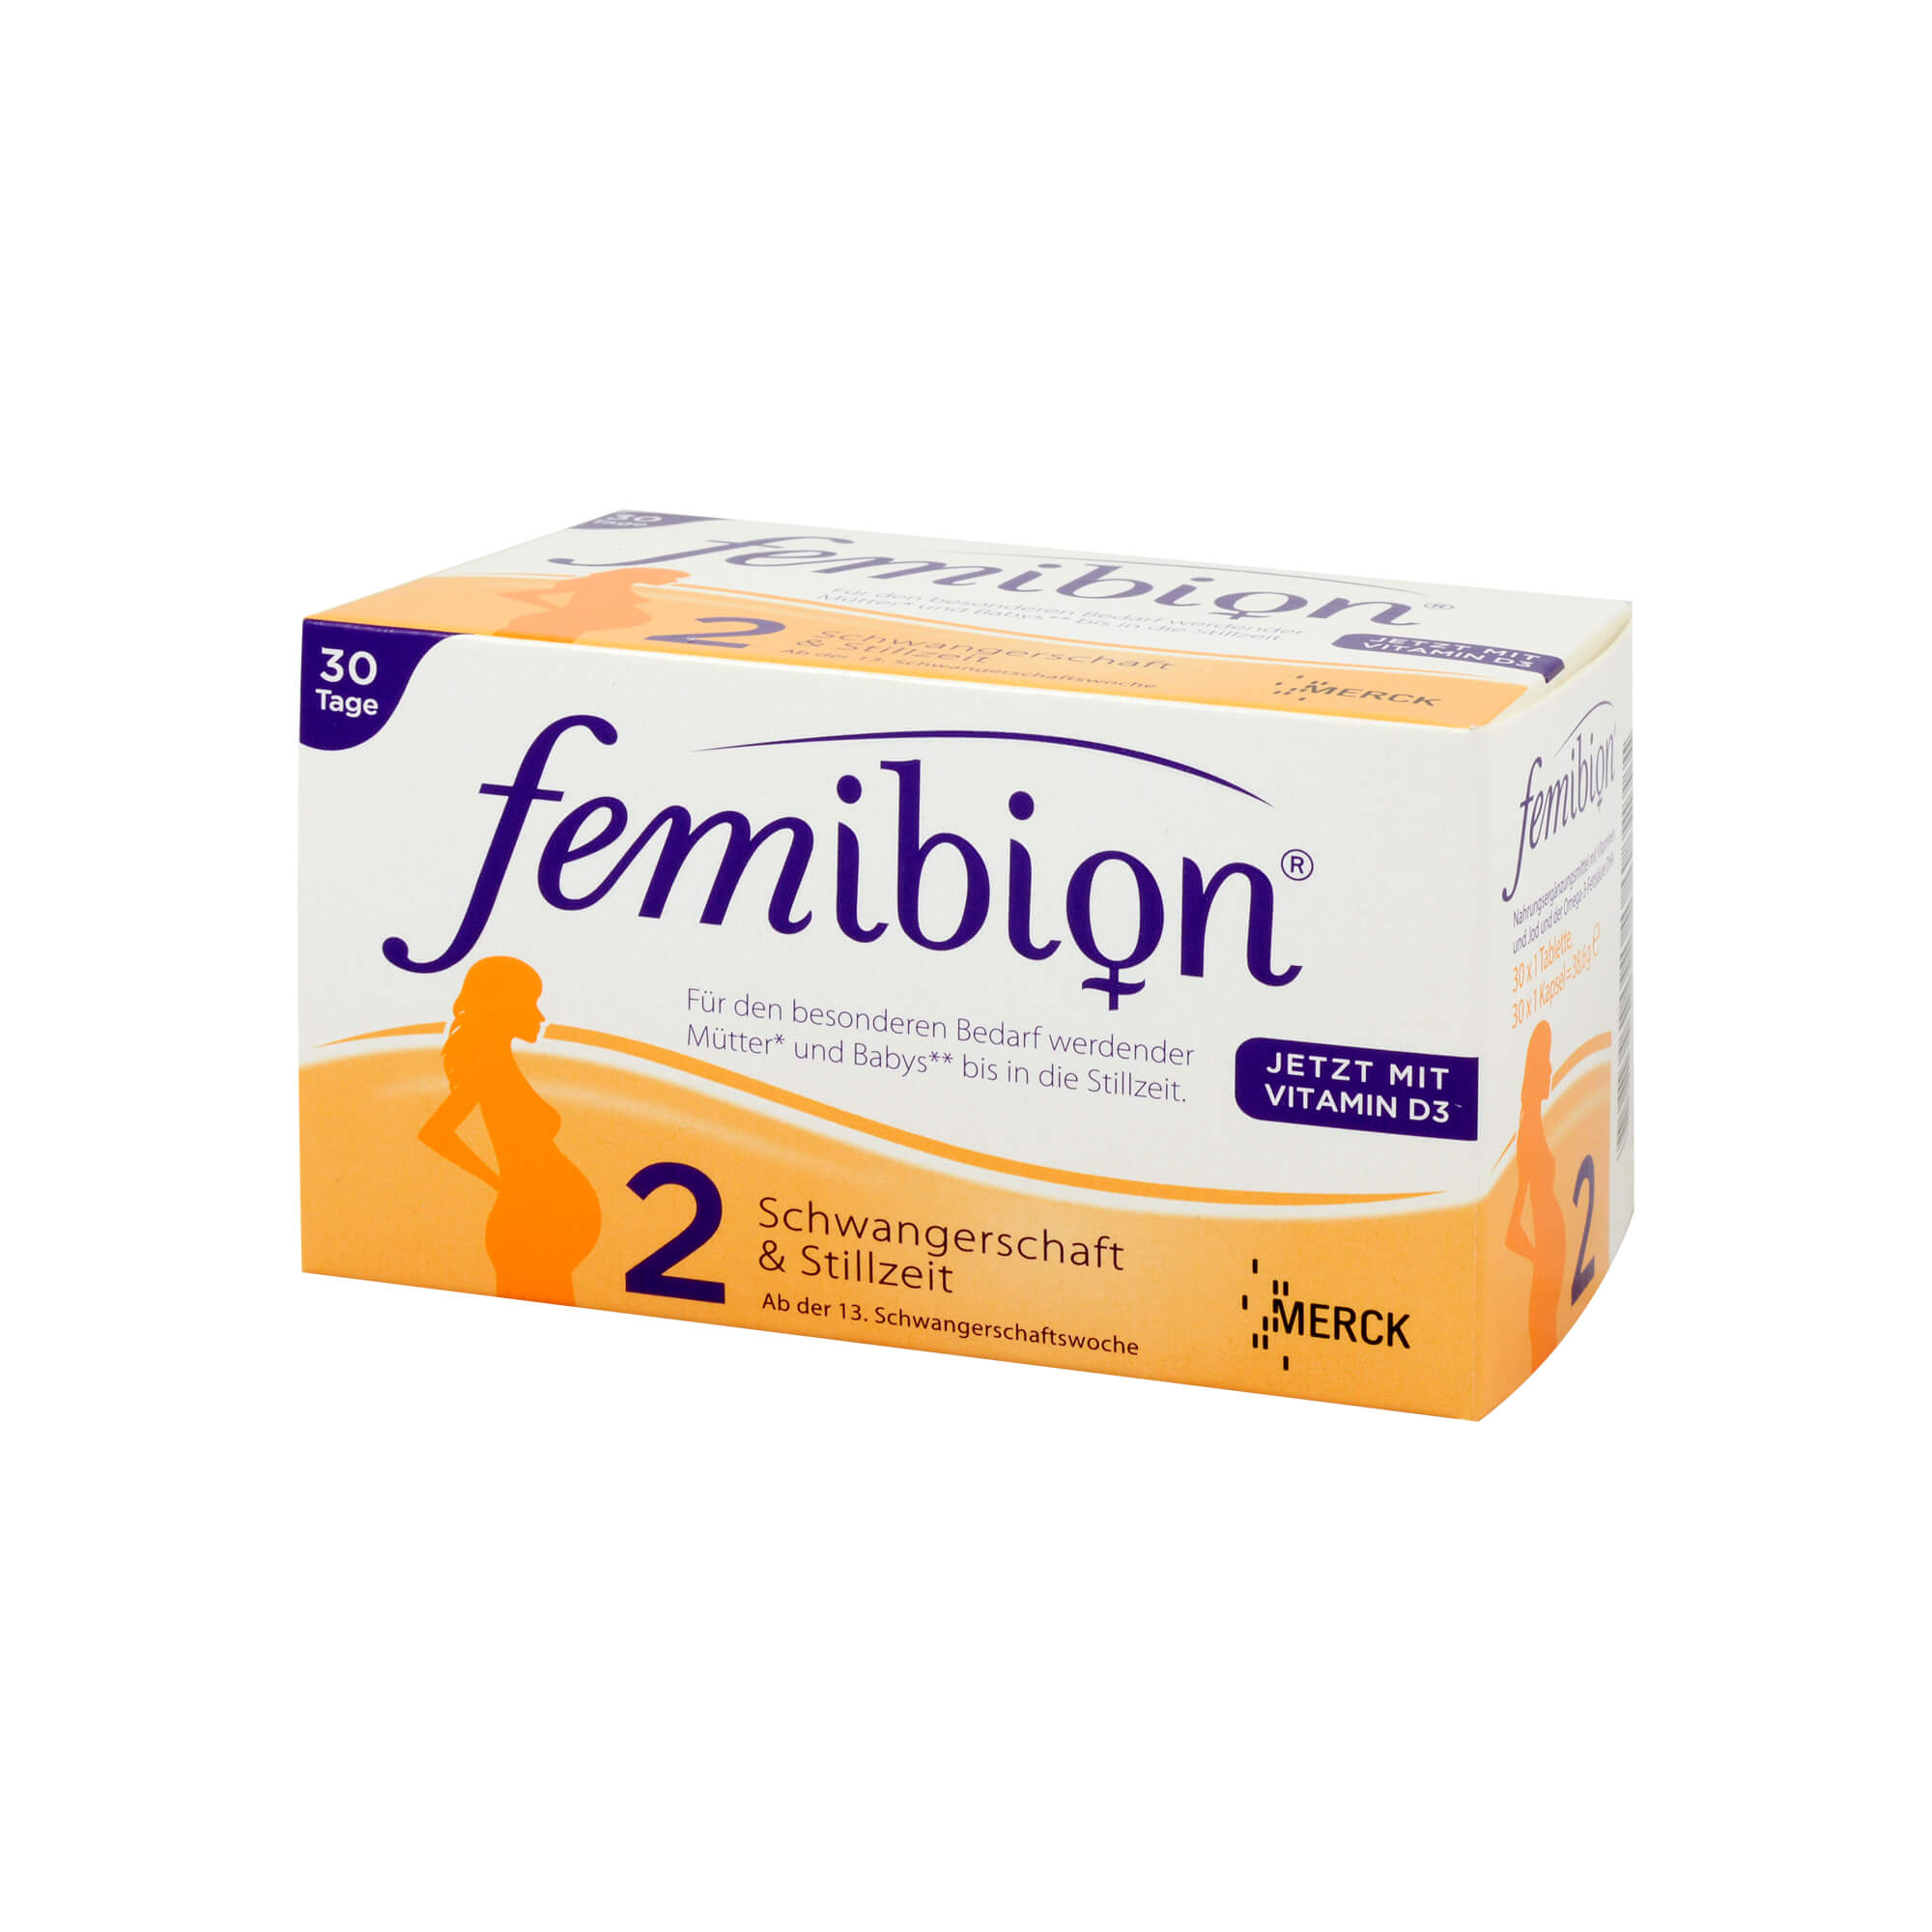 Nahrungsergänzungsmittel mit Vitaminen und Jod. Femibion Schwangerschaft 2 enthält 30 Tabletten + 30 Kapseln = 30 Tagesportionen.